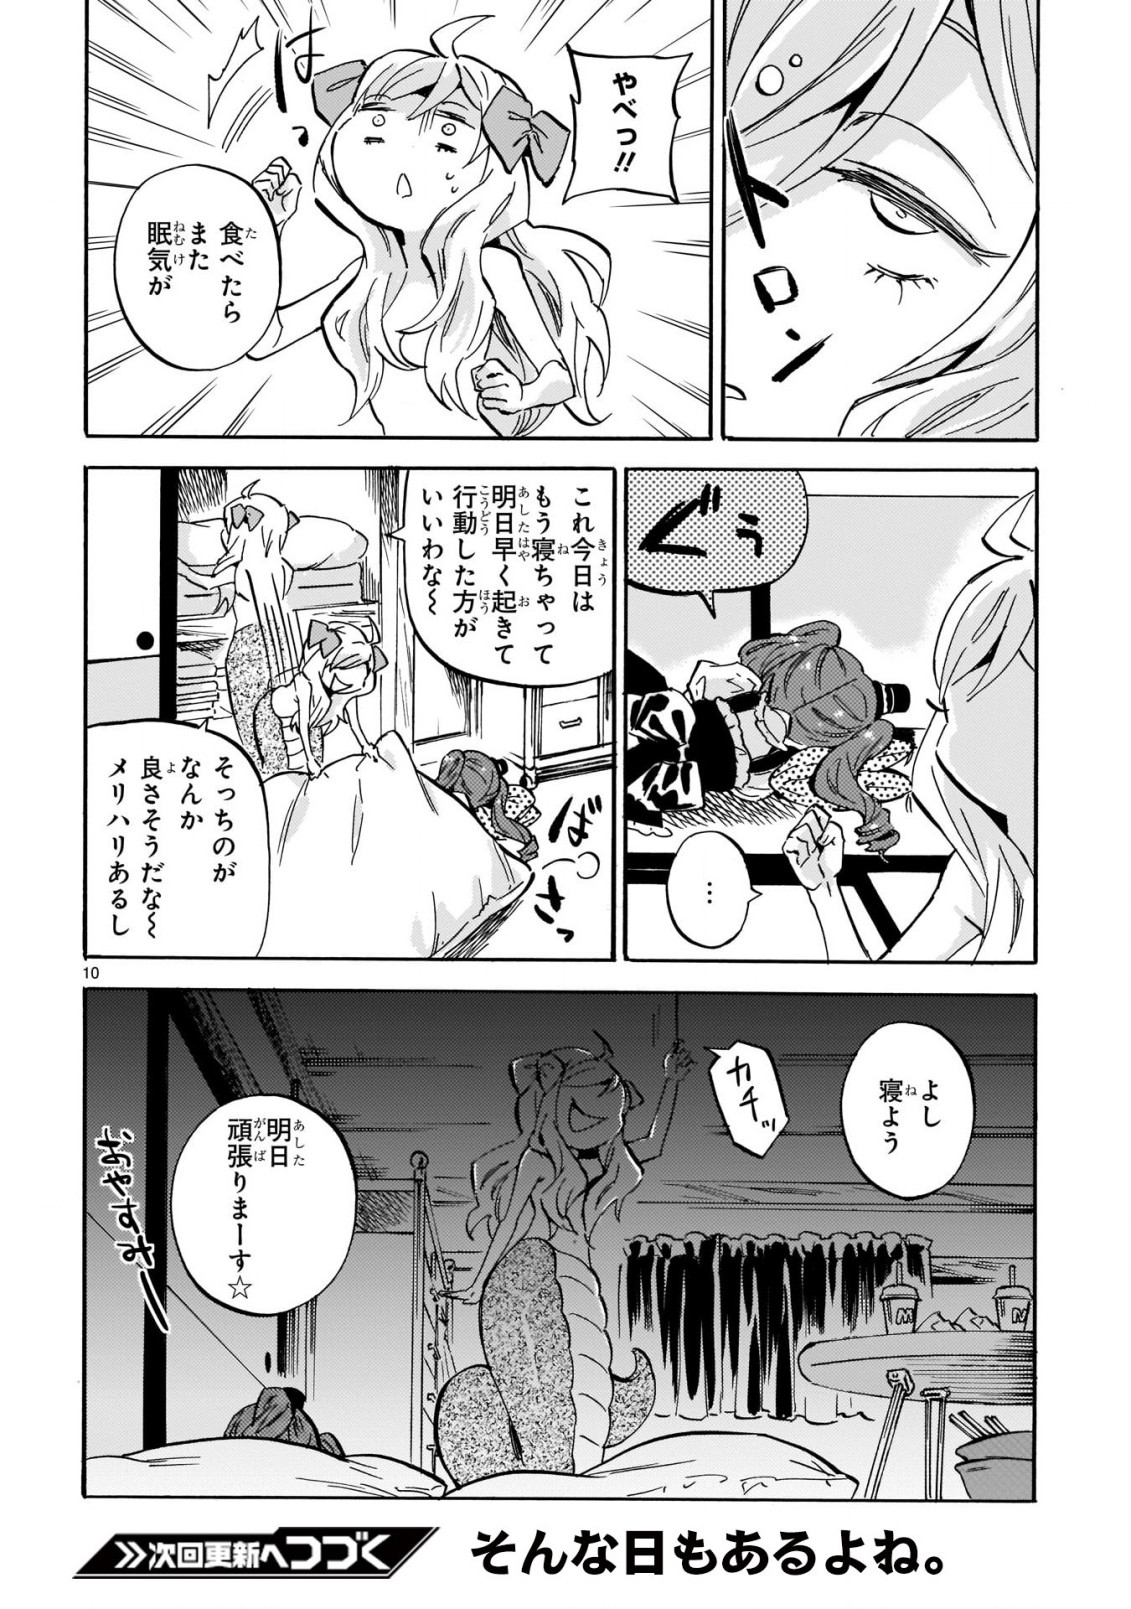 Jashin-chan Dropkick - Chapter 216 - Page 11